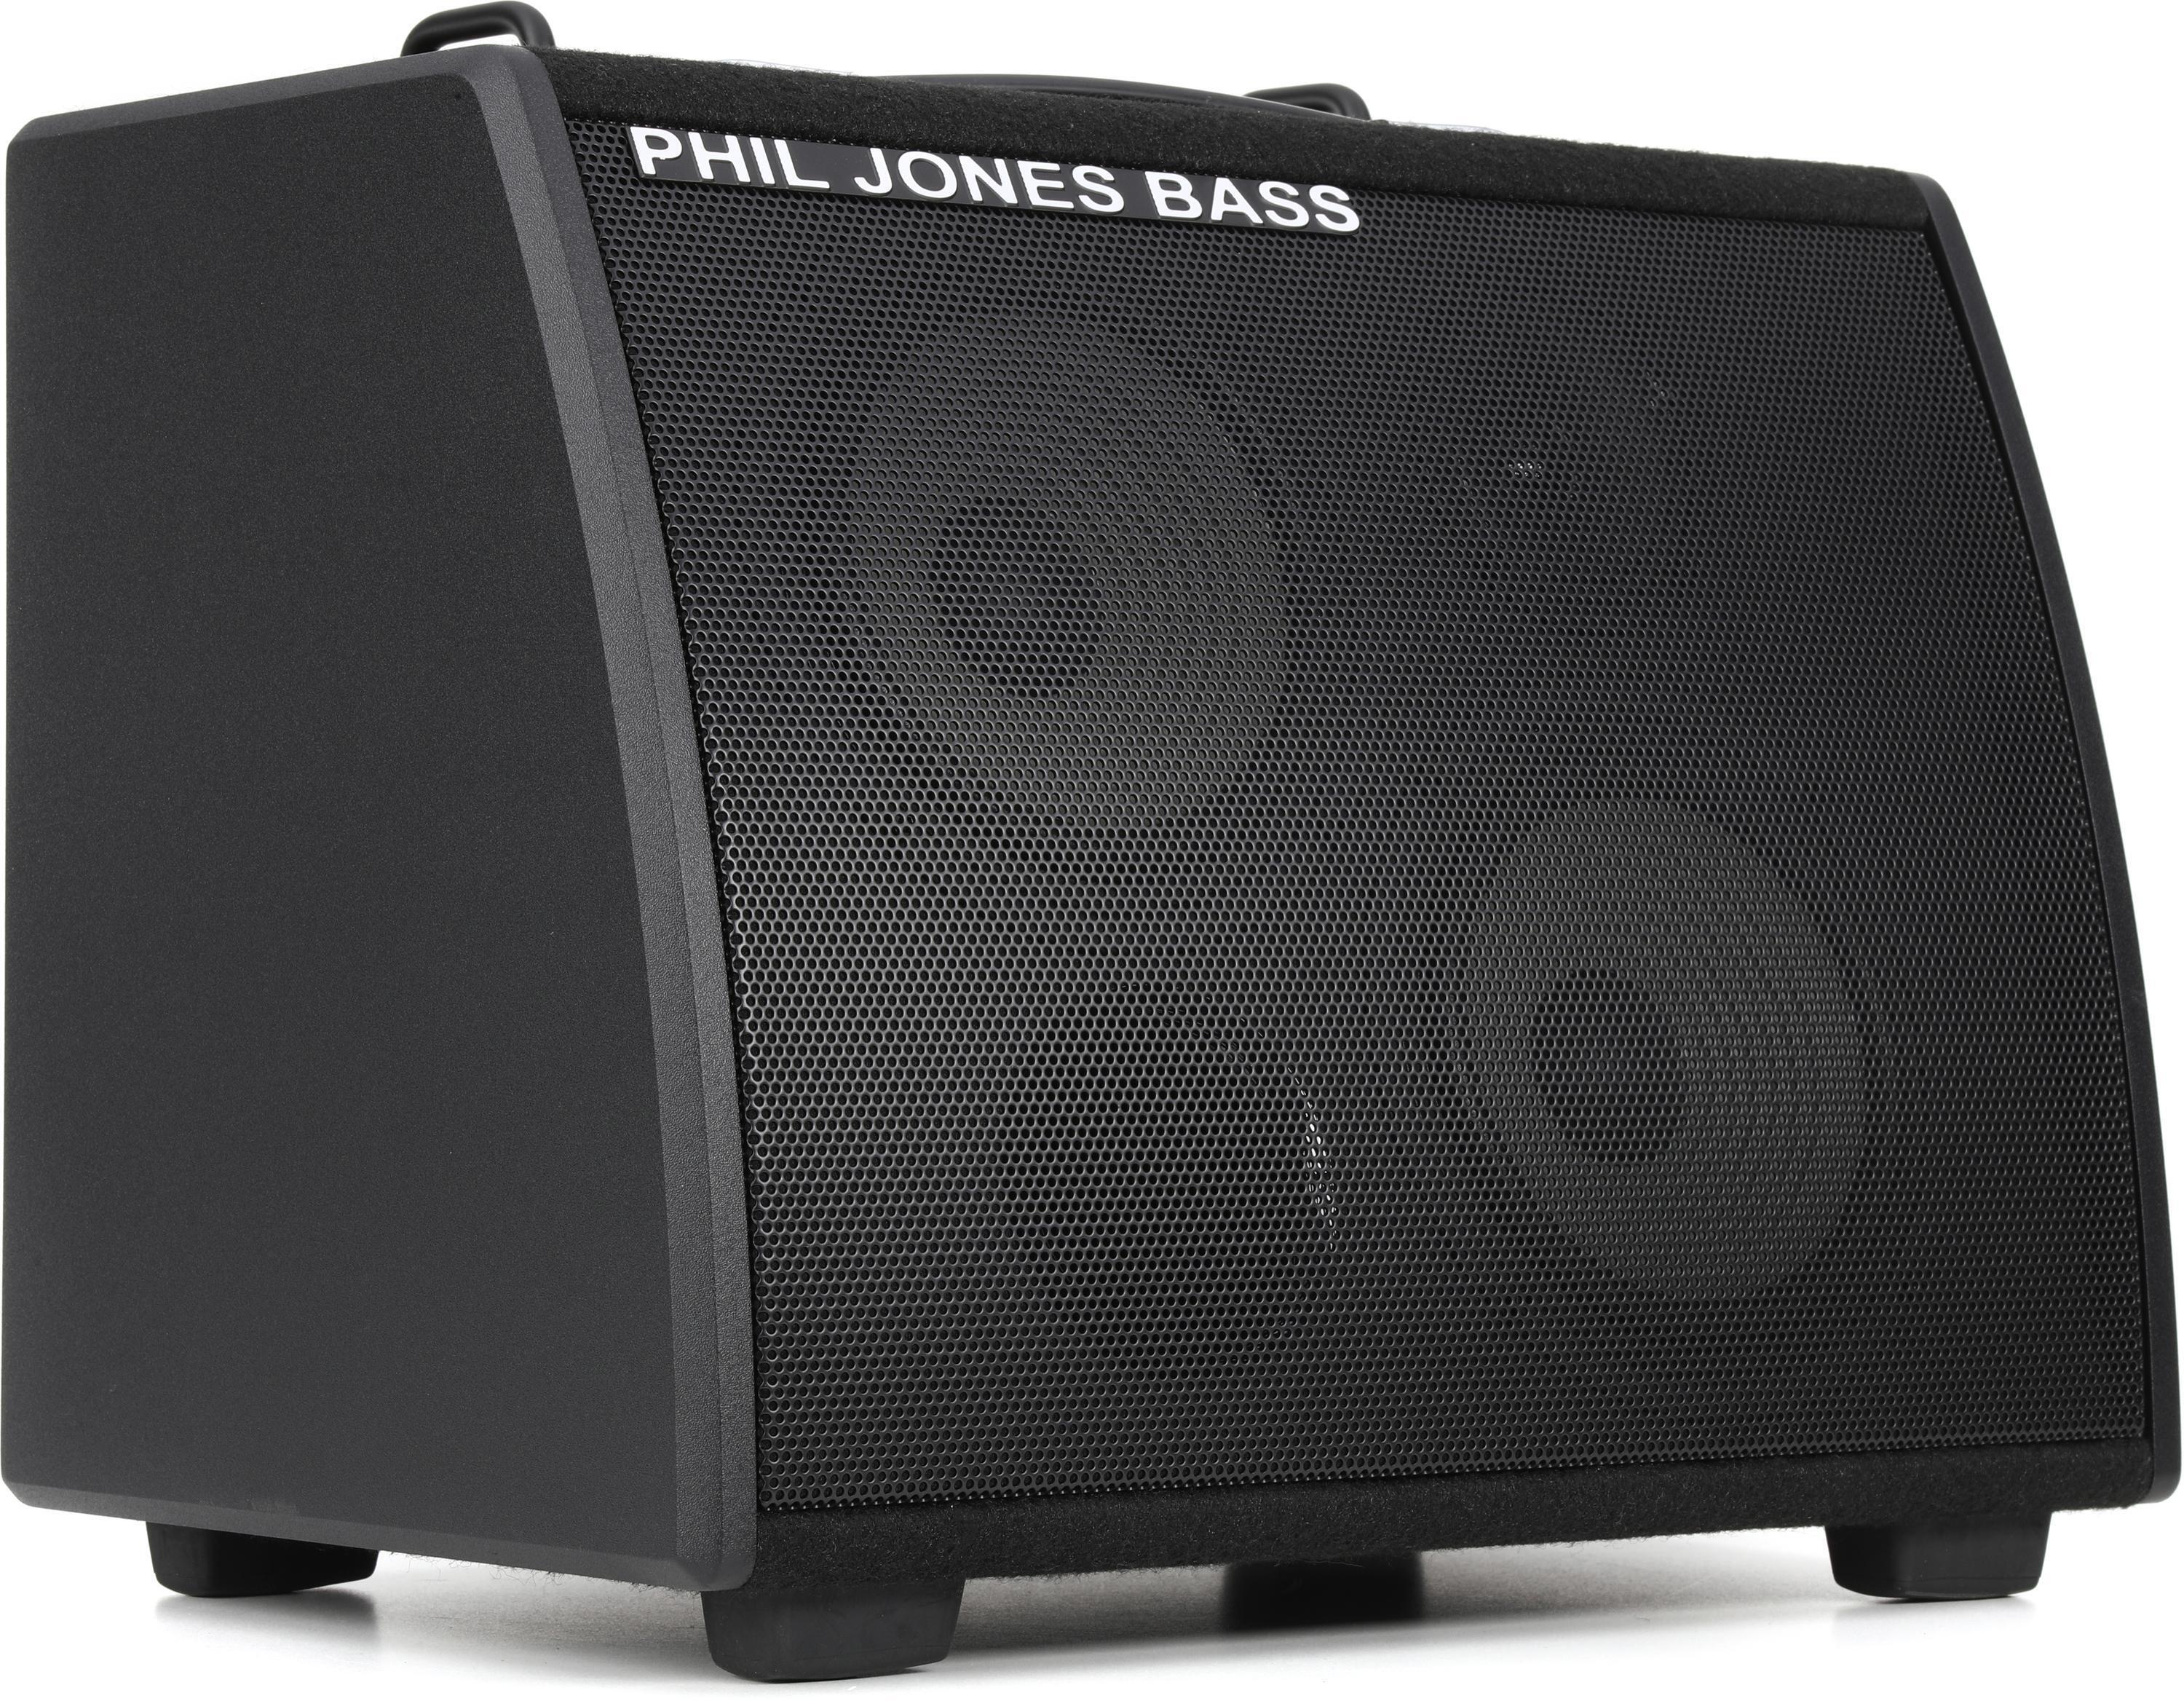 Phil Jones Bass Session 77 100-watt 2 x 7-inch Bass Combo